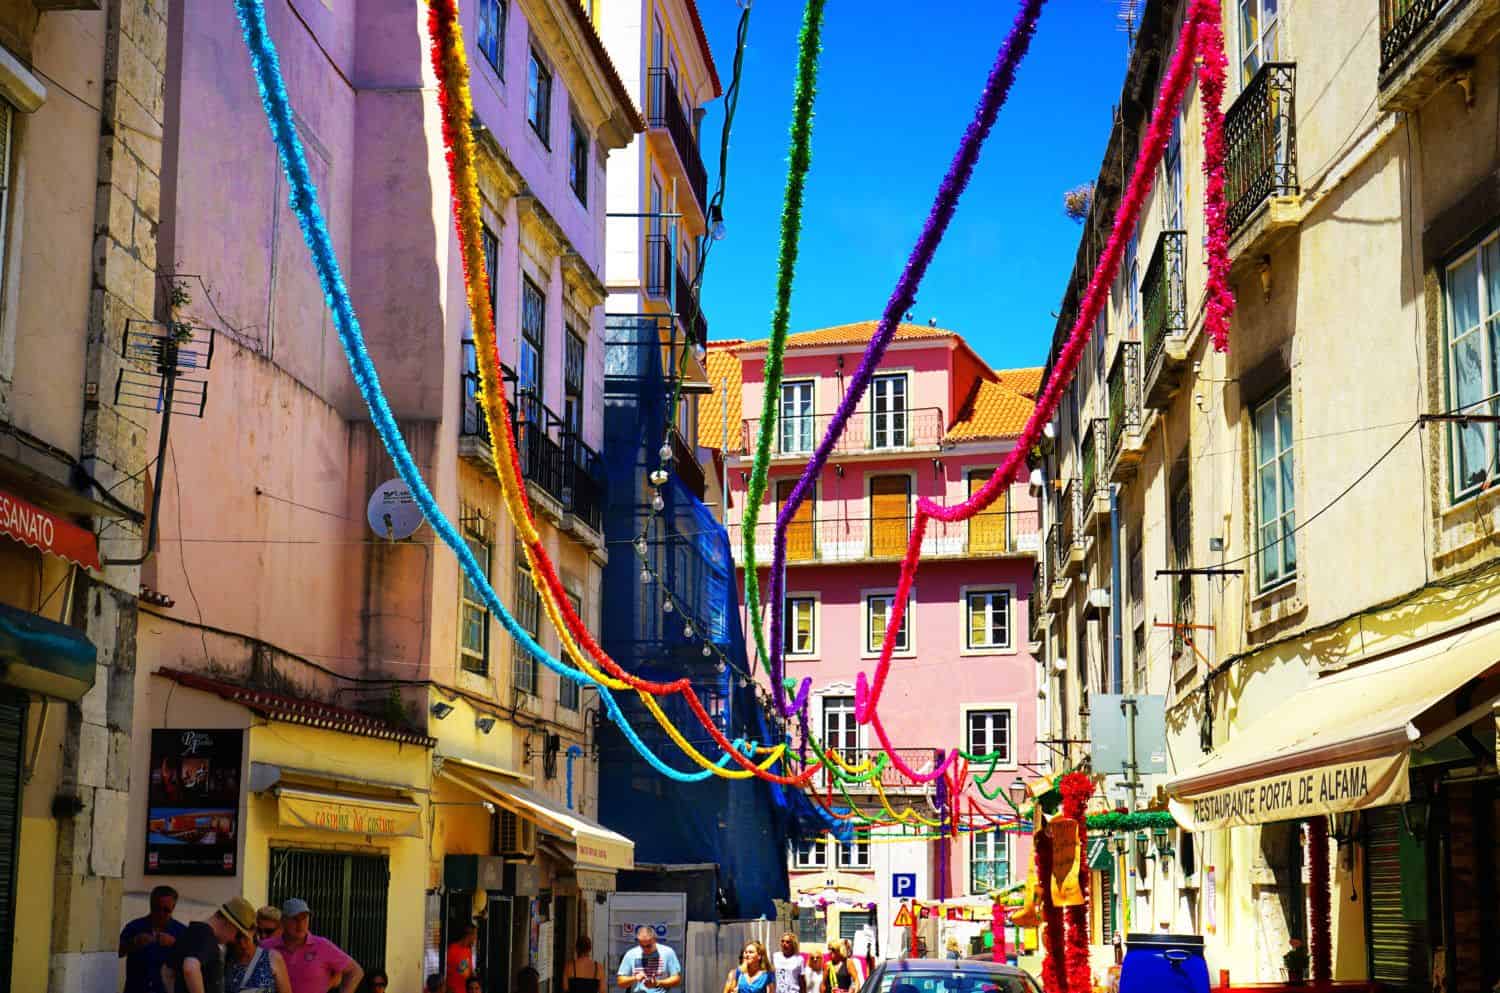 Alfama neighbourhood, in Lisbon